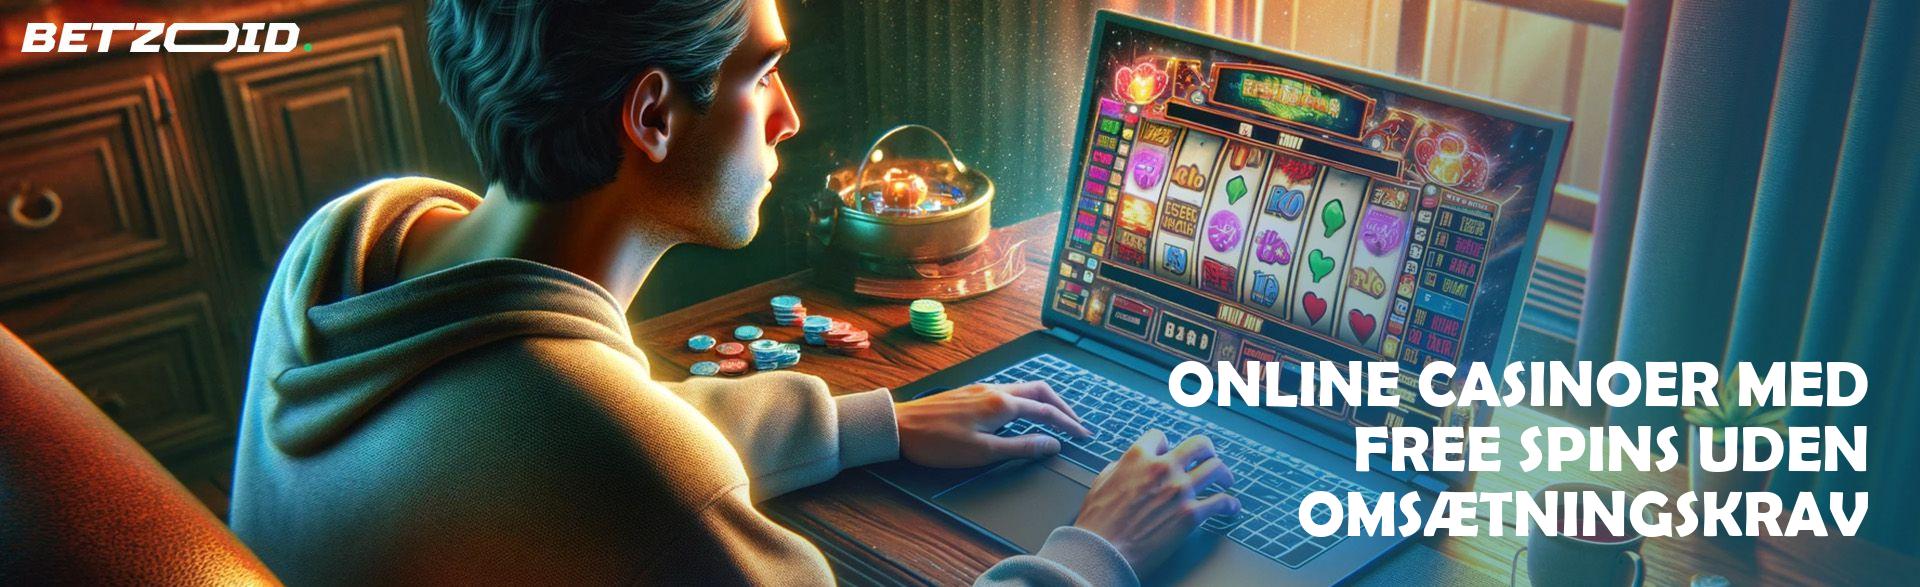 Online Casinoer med Free Spins uden Omsætningskrav.